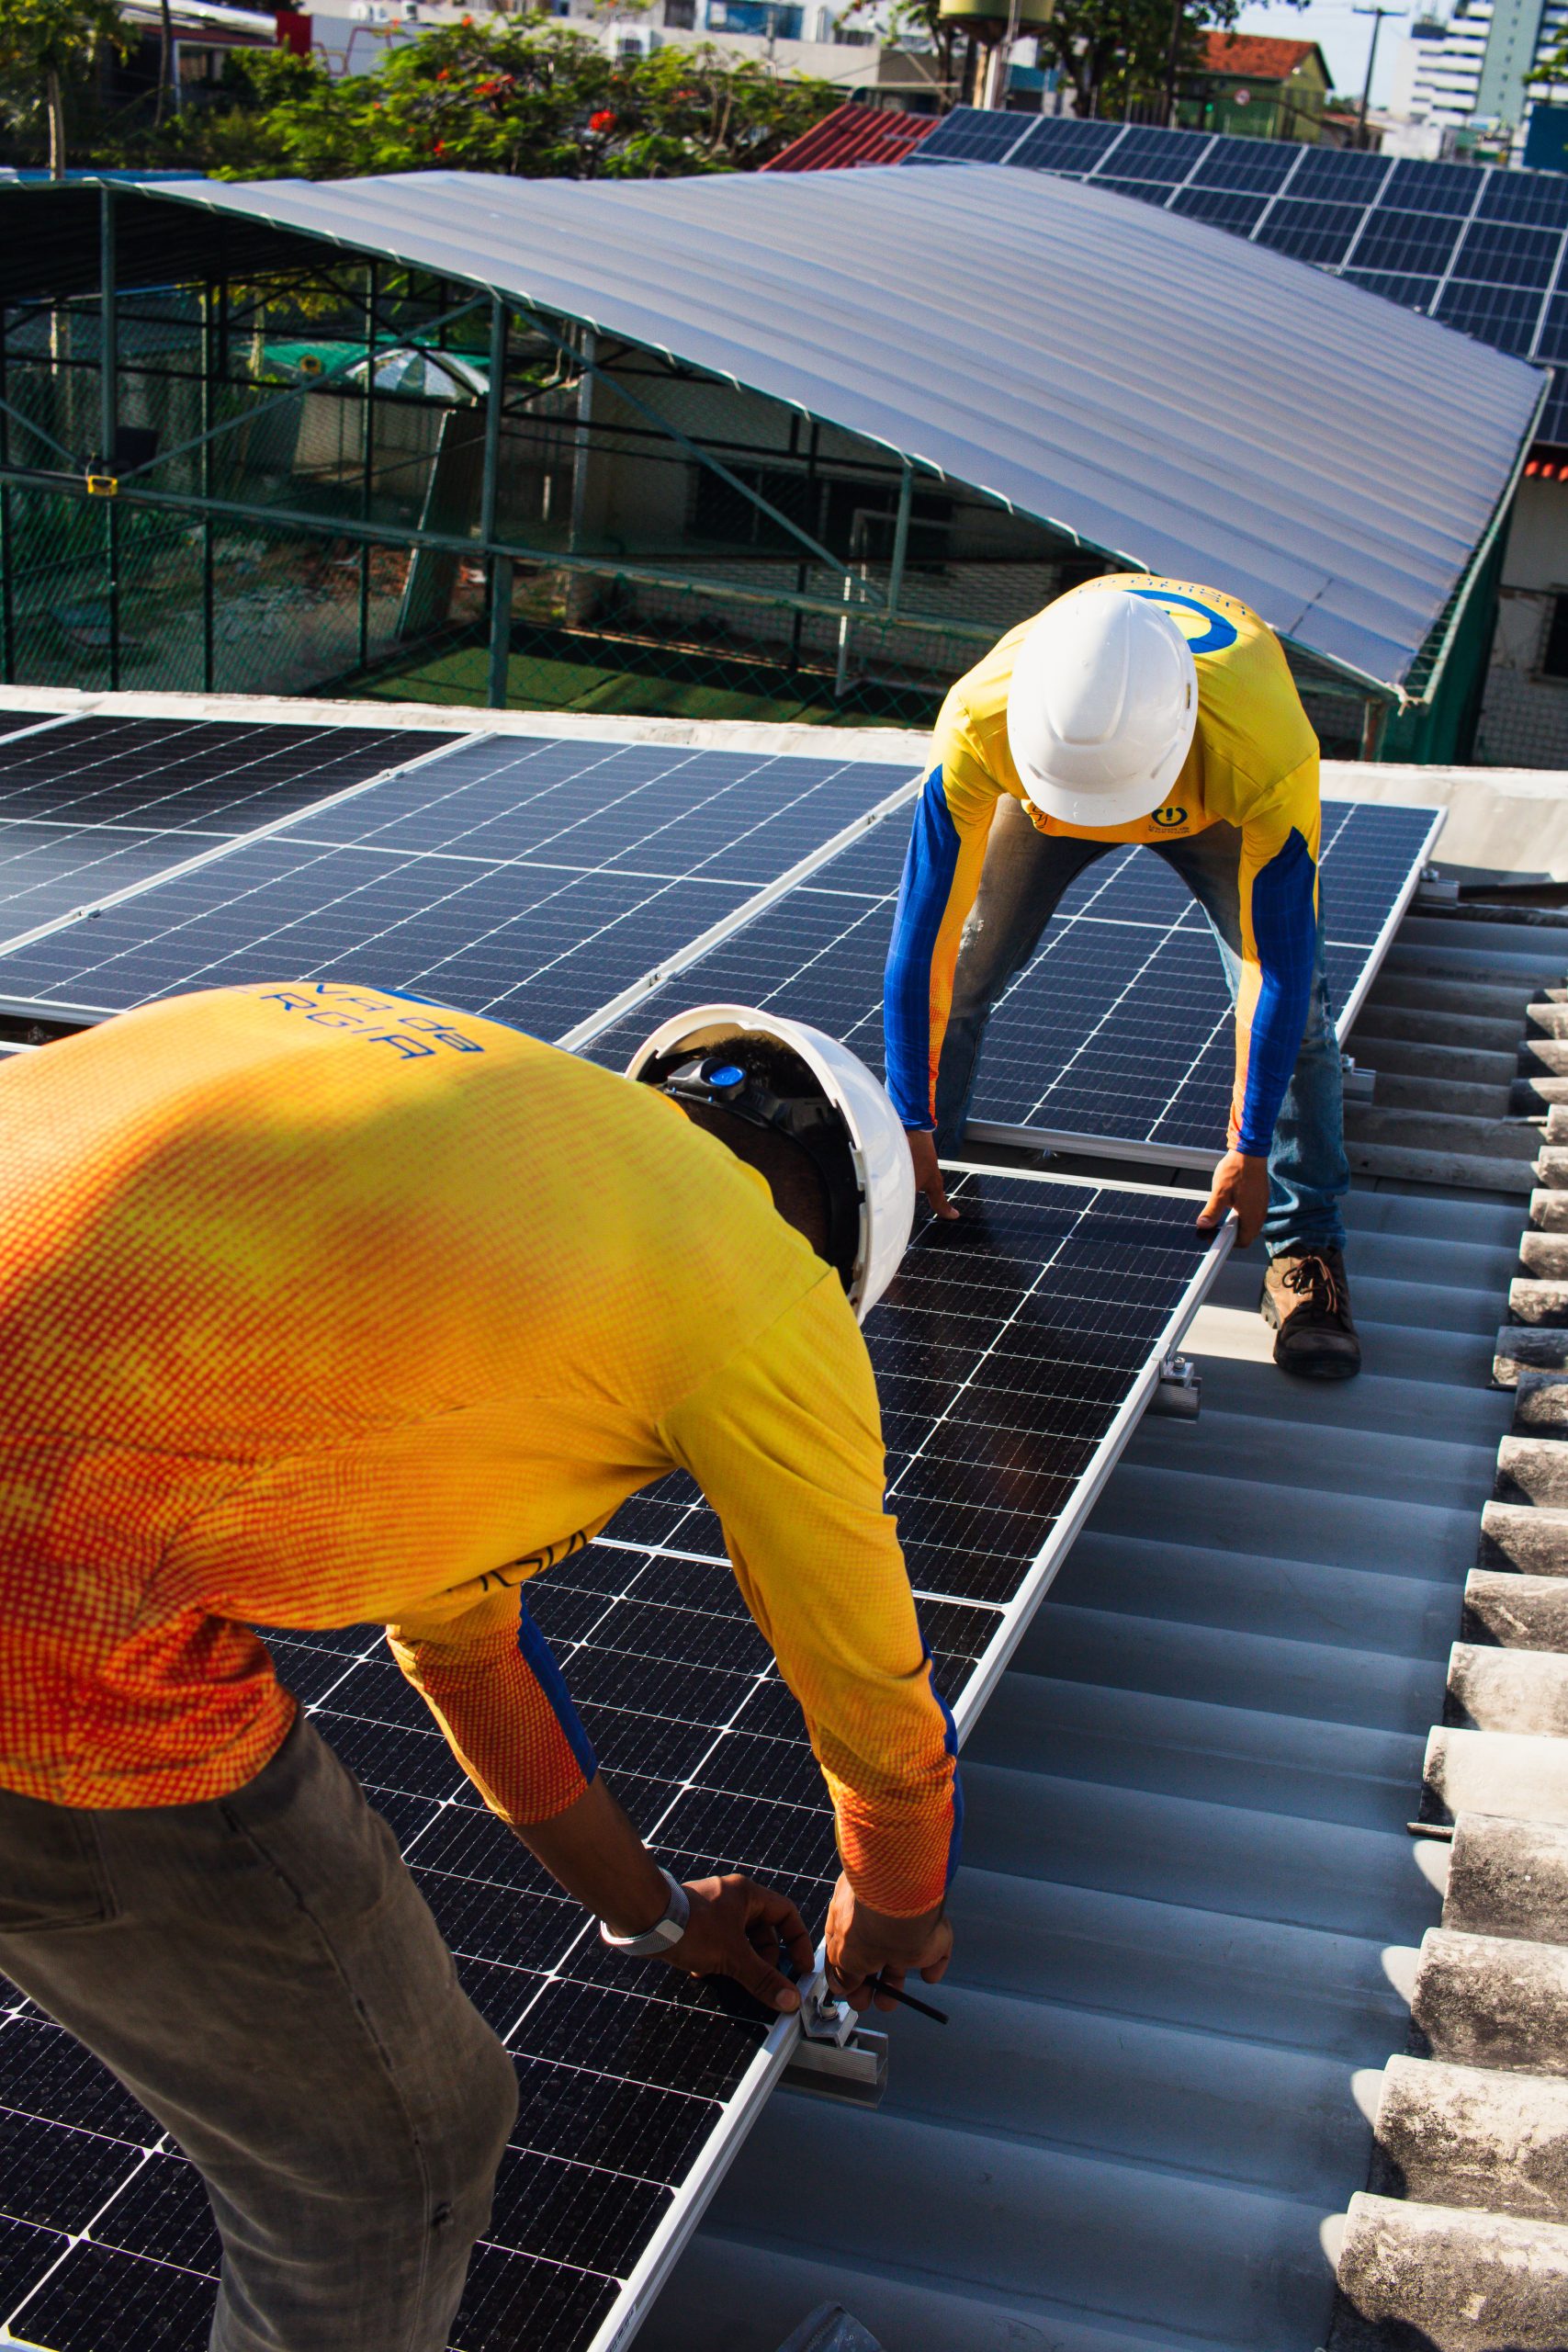 Técnicos da Usina da Energia alinhando um painel fotovoltaico